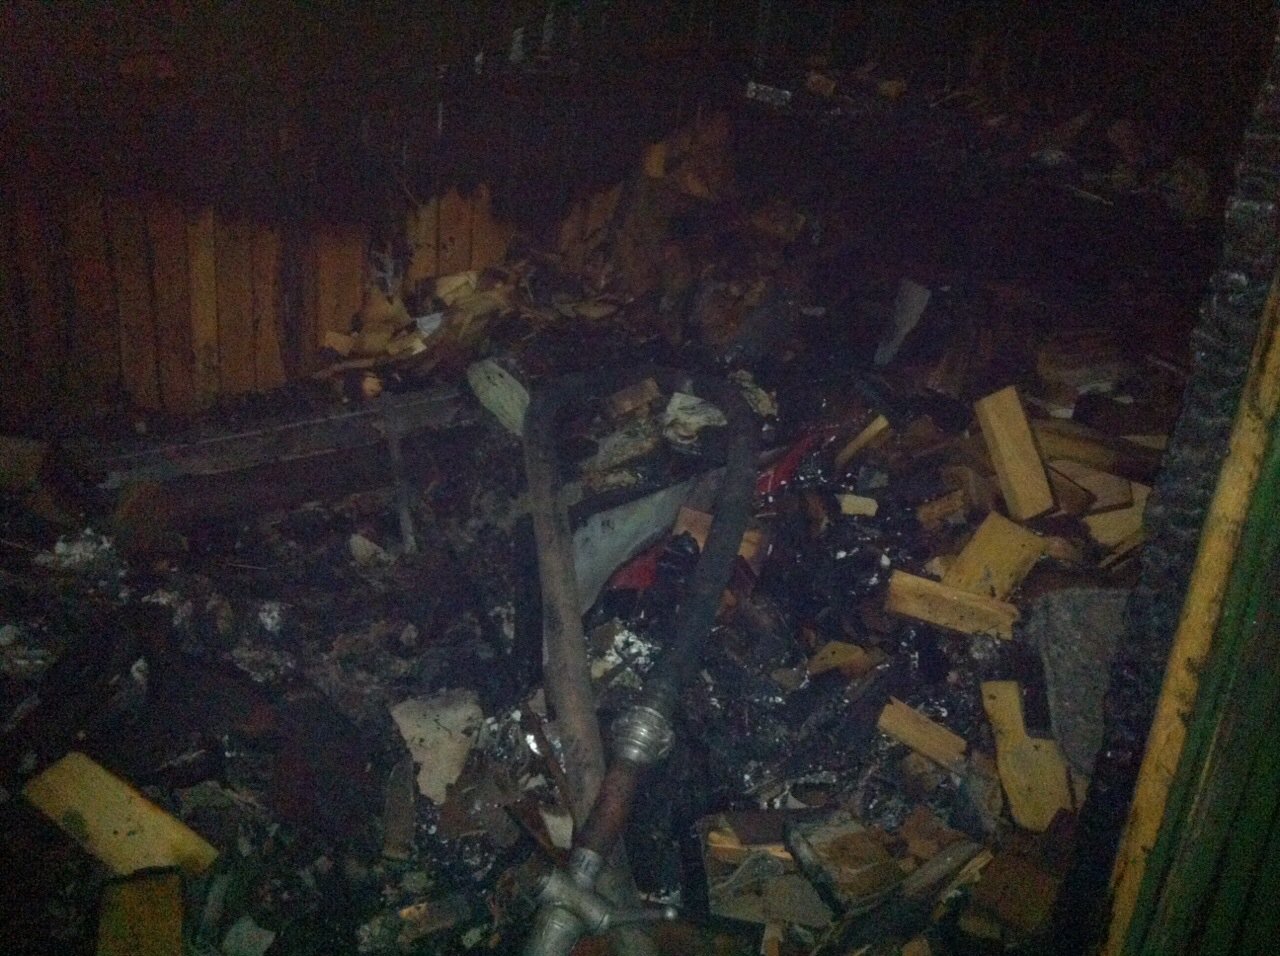 Складувавши золу від спаленого мотлоху в господарчій споруді в Ужгороді, власник спричинився до підпалу будівлі (ФОТО)  